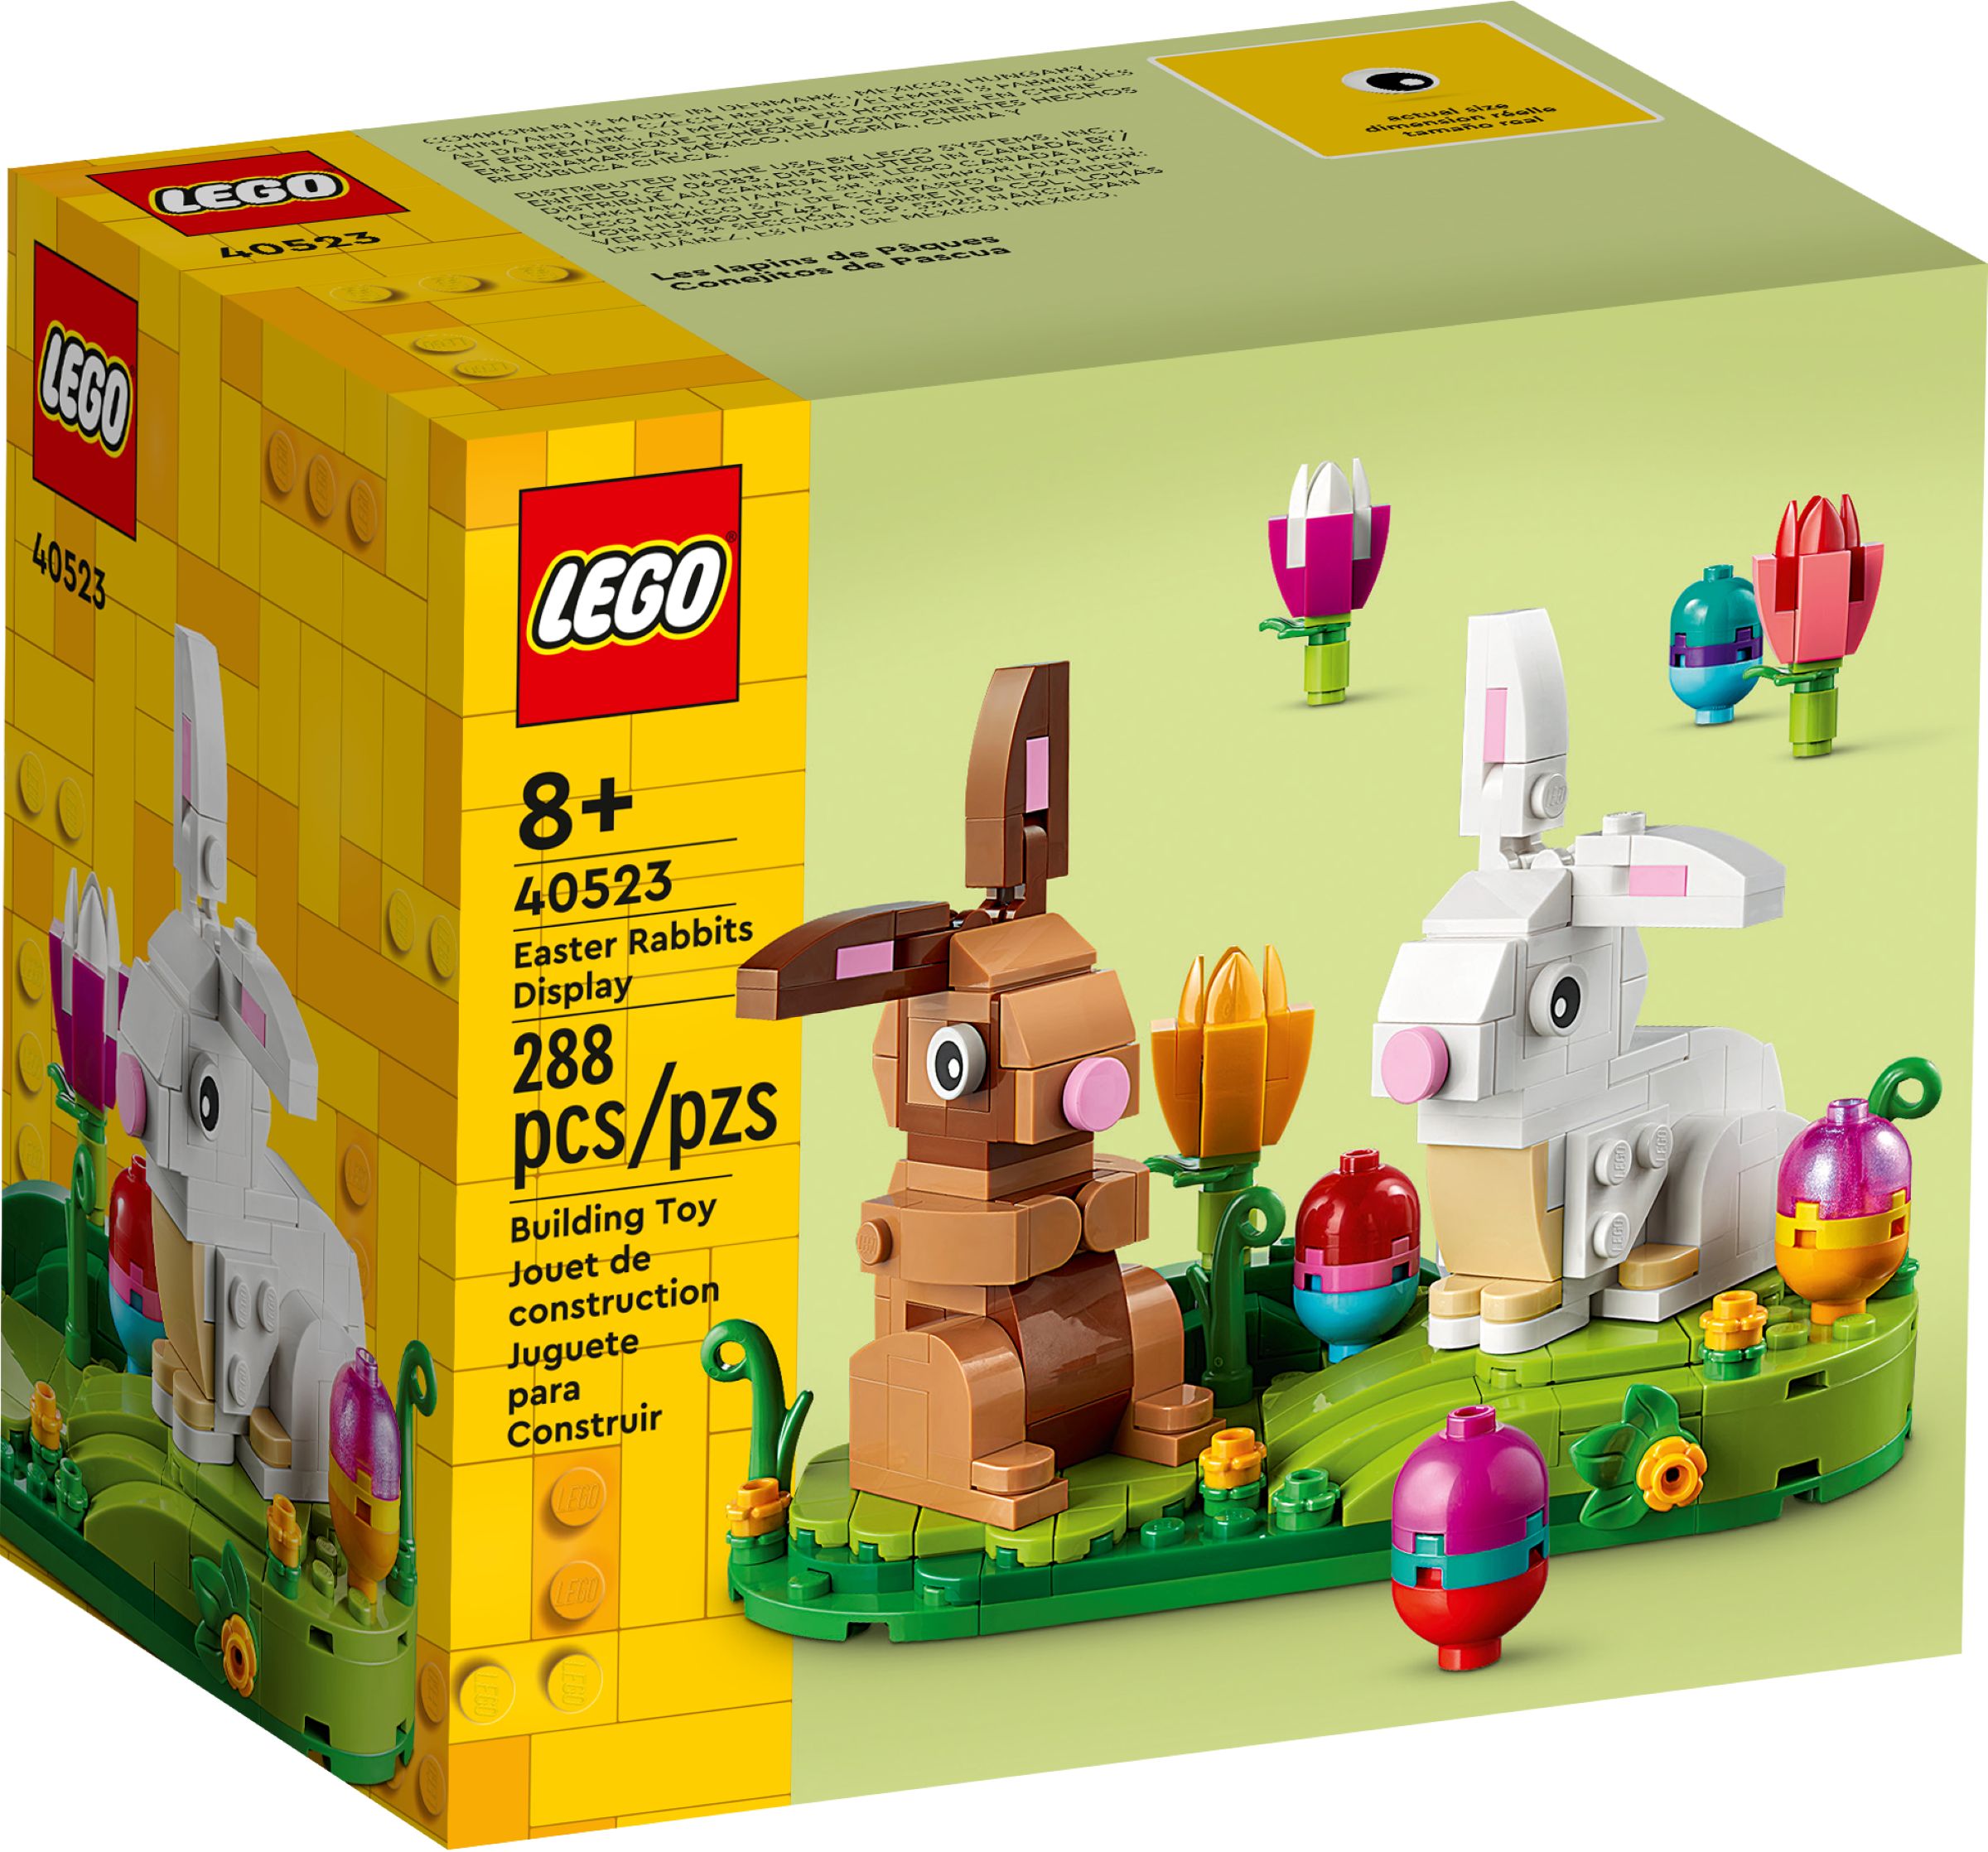 LEGO Seasonal 40523 Osterhasen LEGO_40523_alt1.jpg